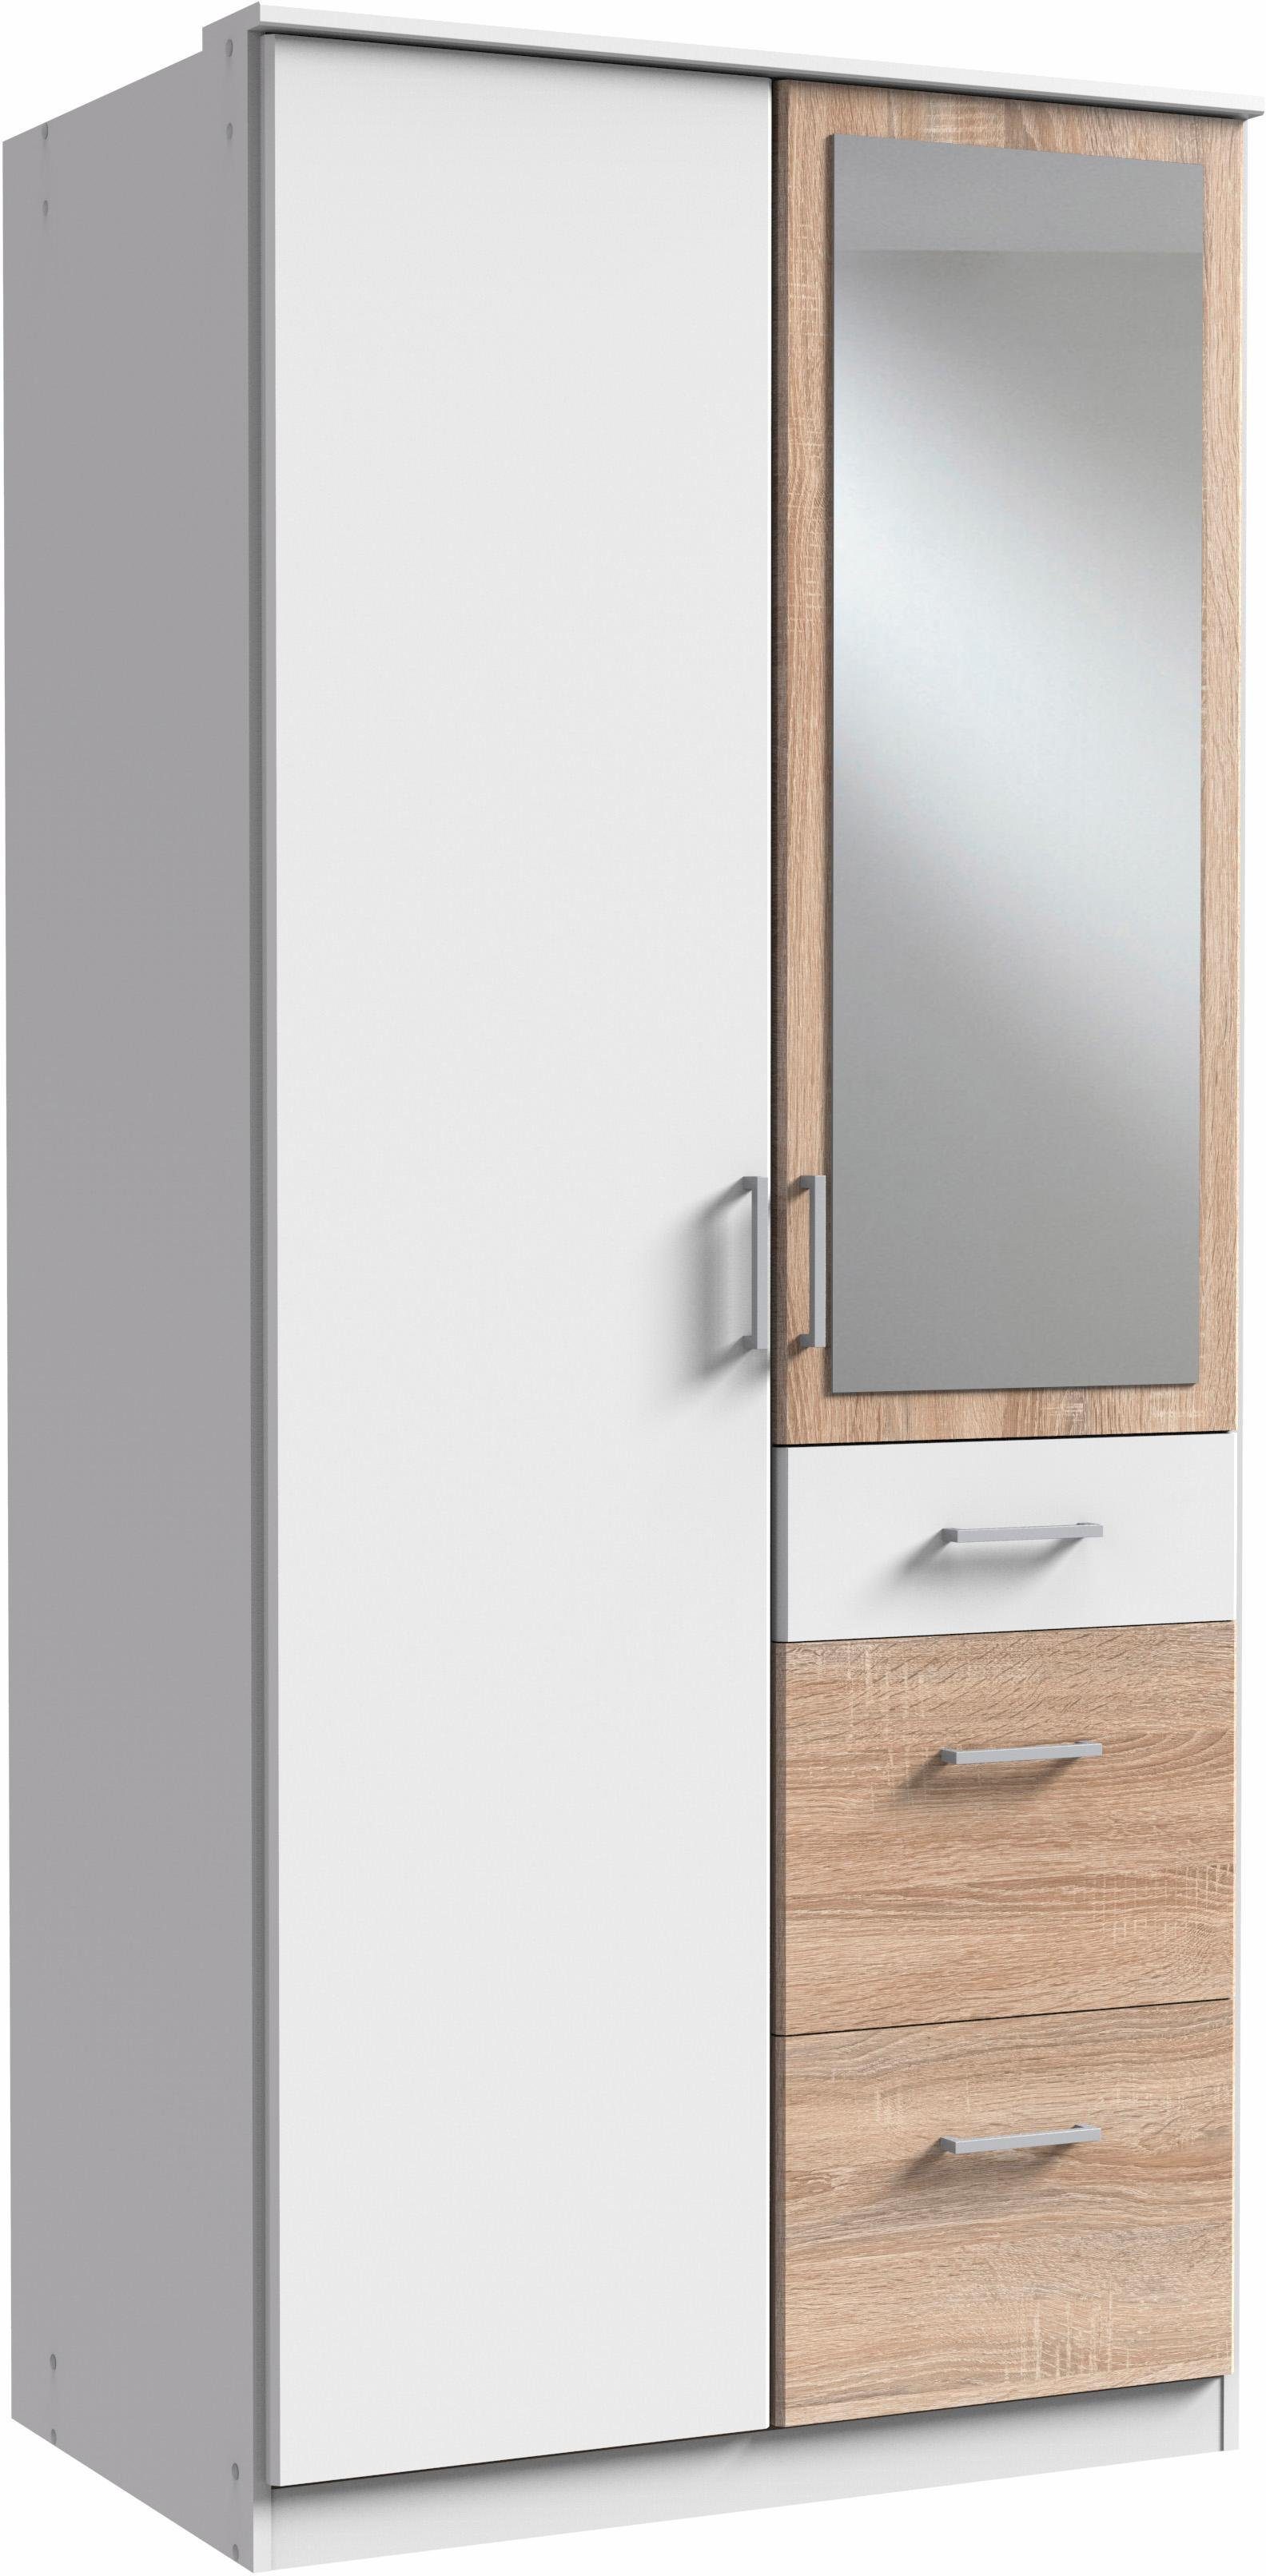 Wimex Kleiderschrank Click mit hell weiß/struktureichefarben Spiegel